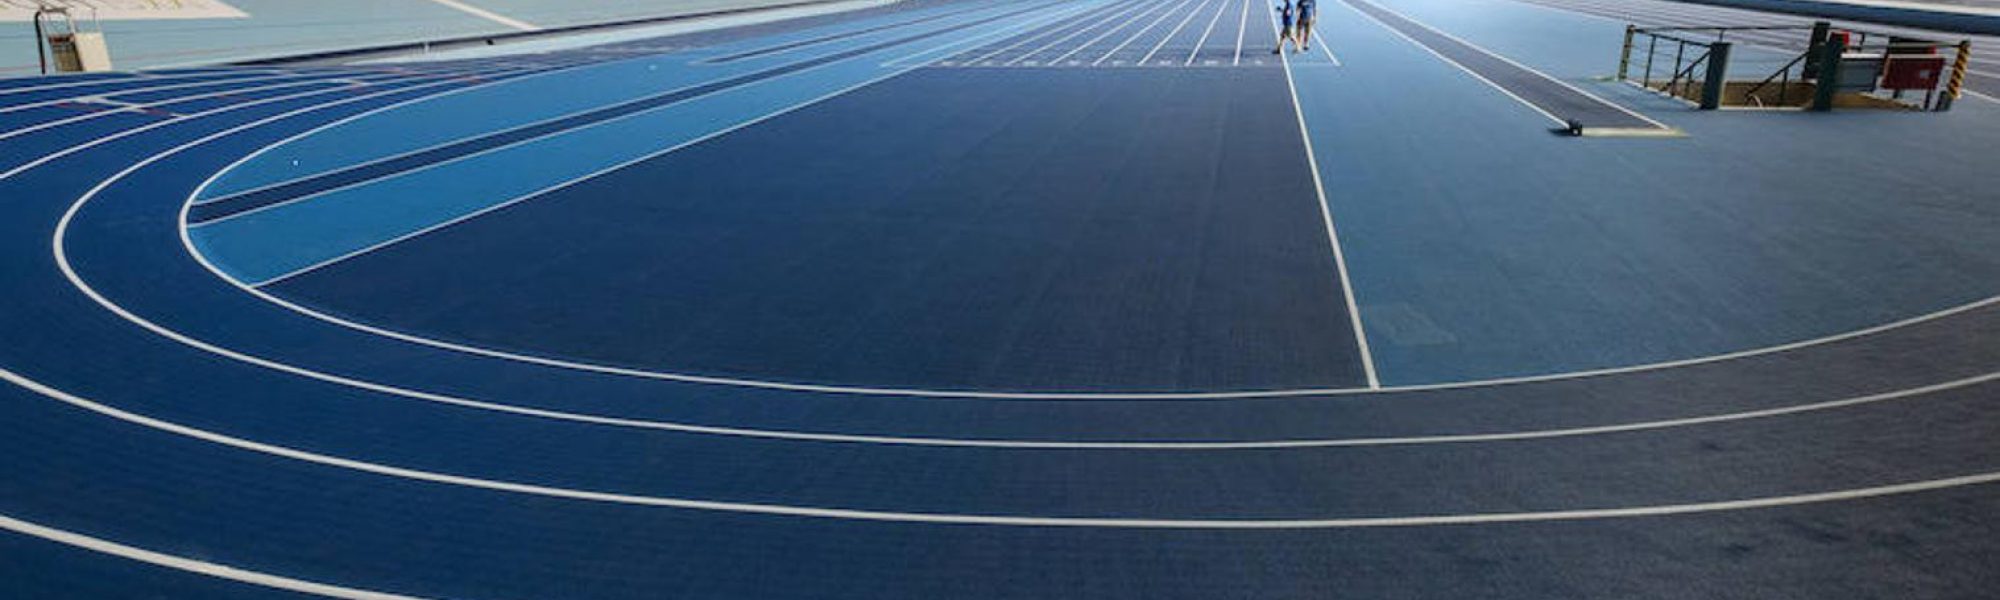 El Velódromo Antonio Elorza de Donostia/San Sebastián cuenta con el certificado Indoor de World Athletics